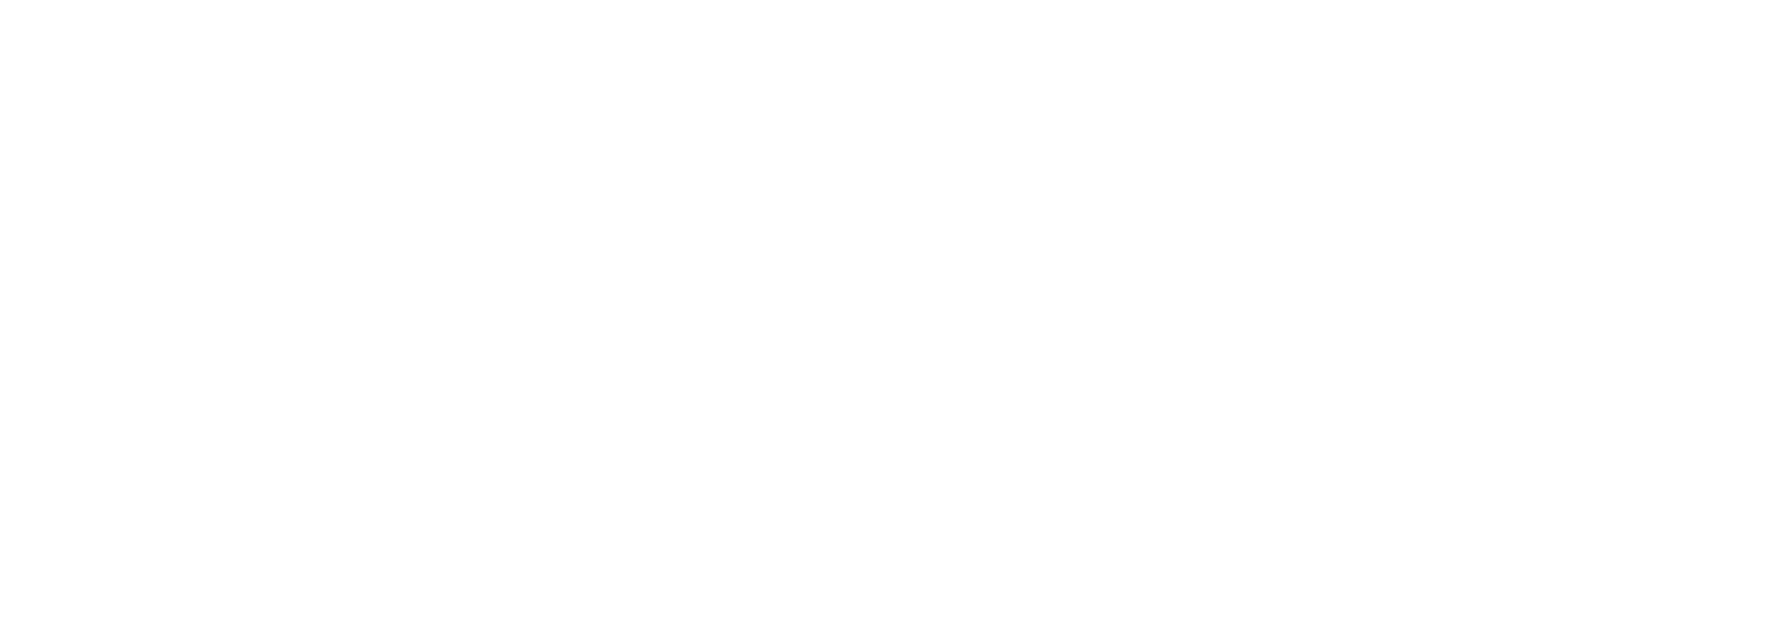 hug fun logo